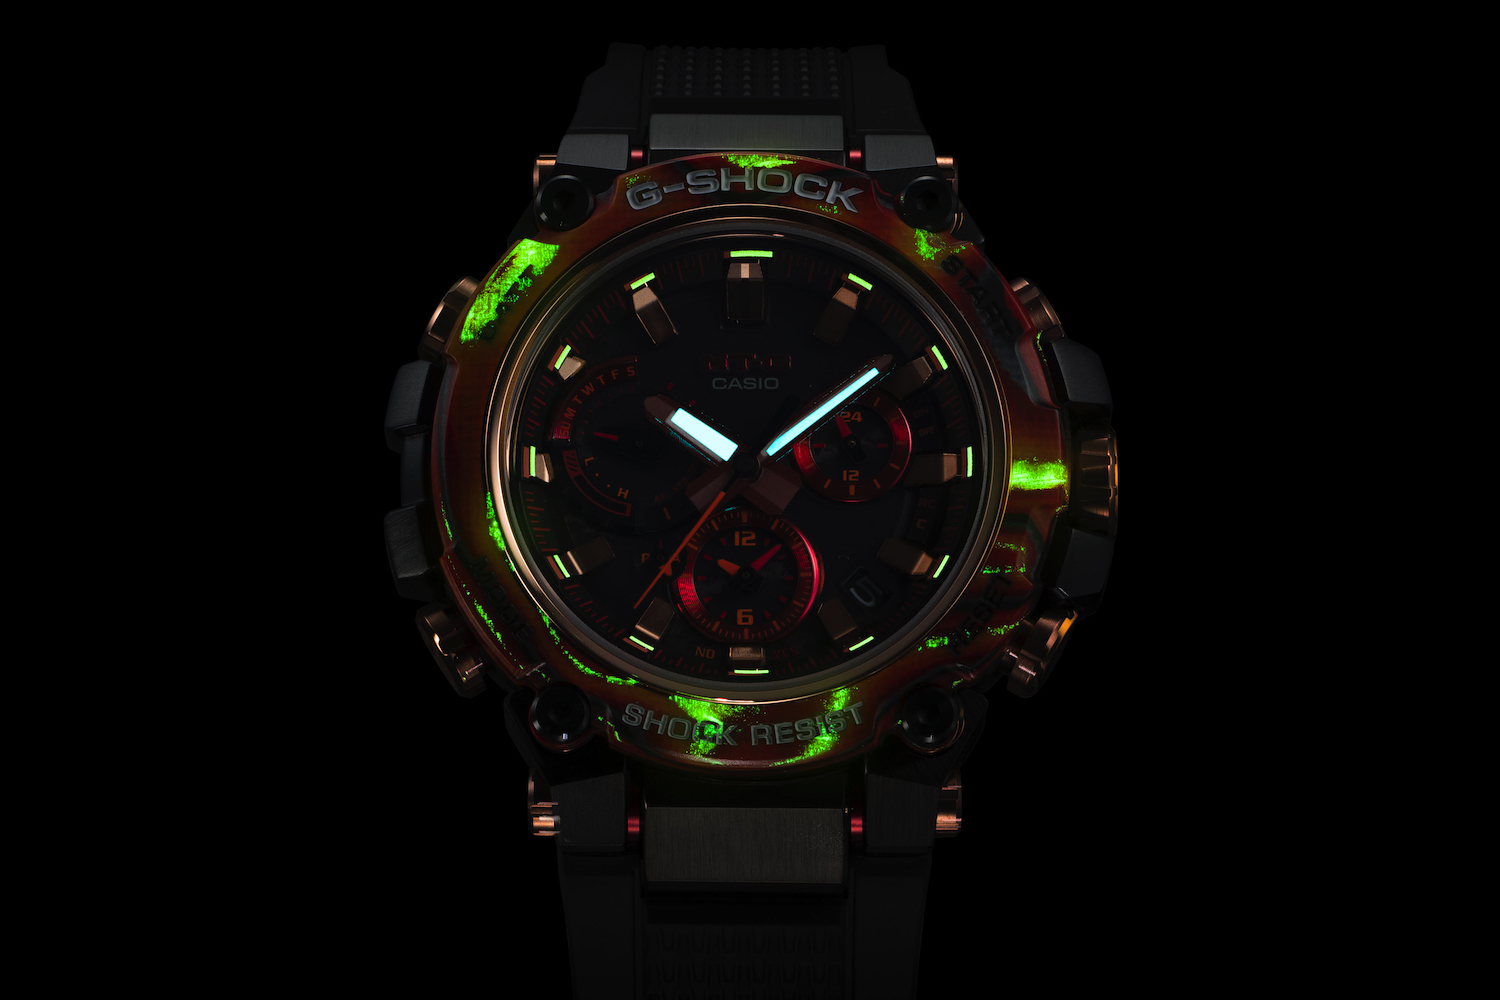 G-Shock MTG-B3000FR brilhando no escuro.